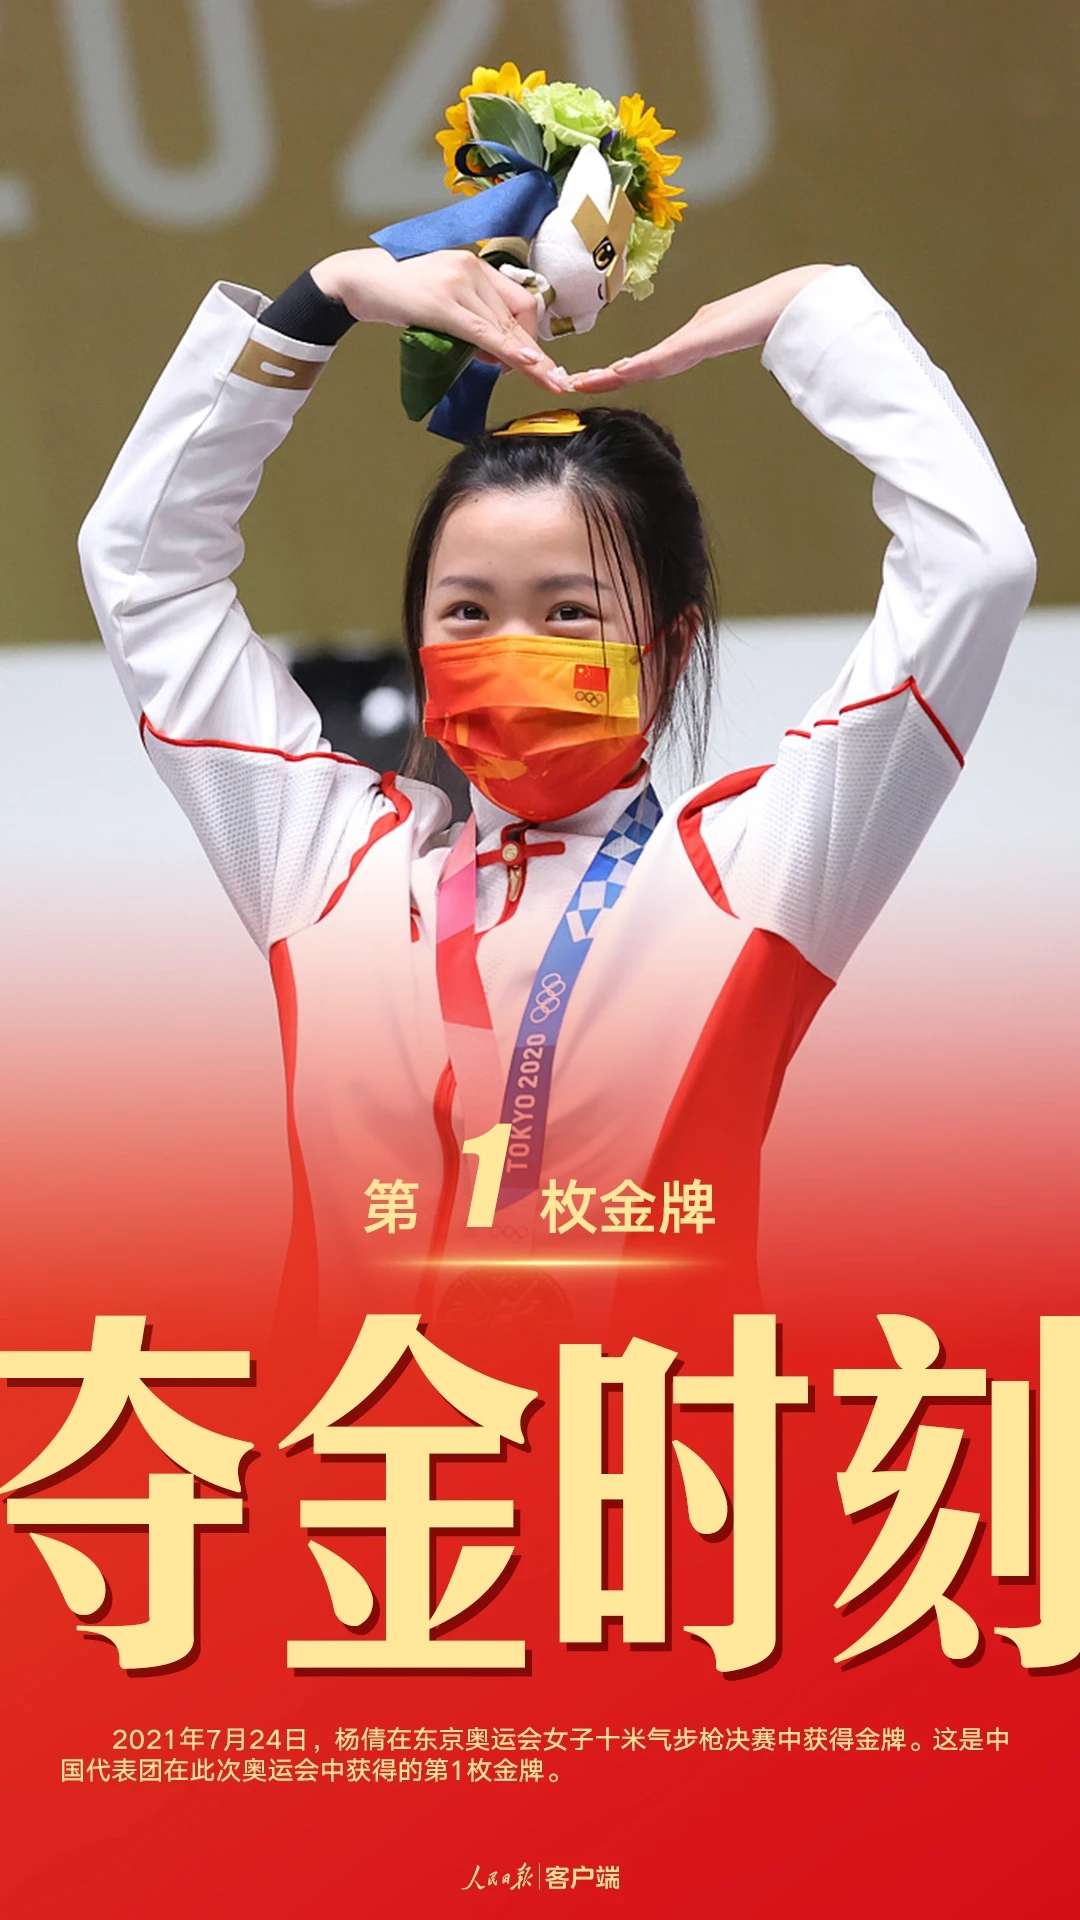 东京奥运会闭幕中国队88枚奖牌完美收官一起回顾这些精彩瞬间